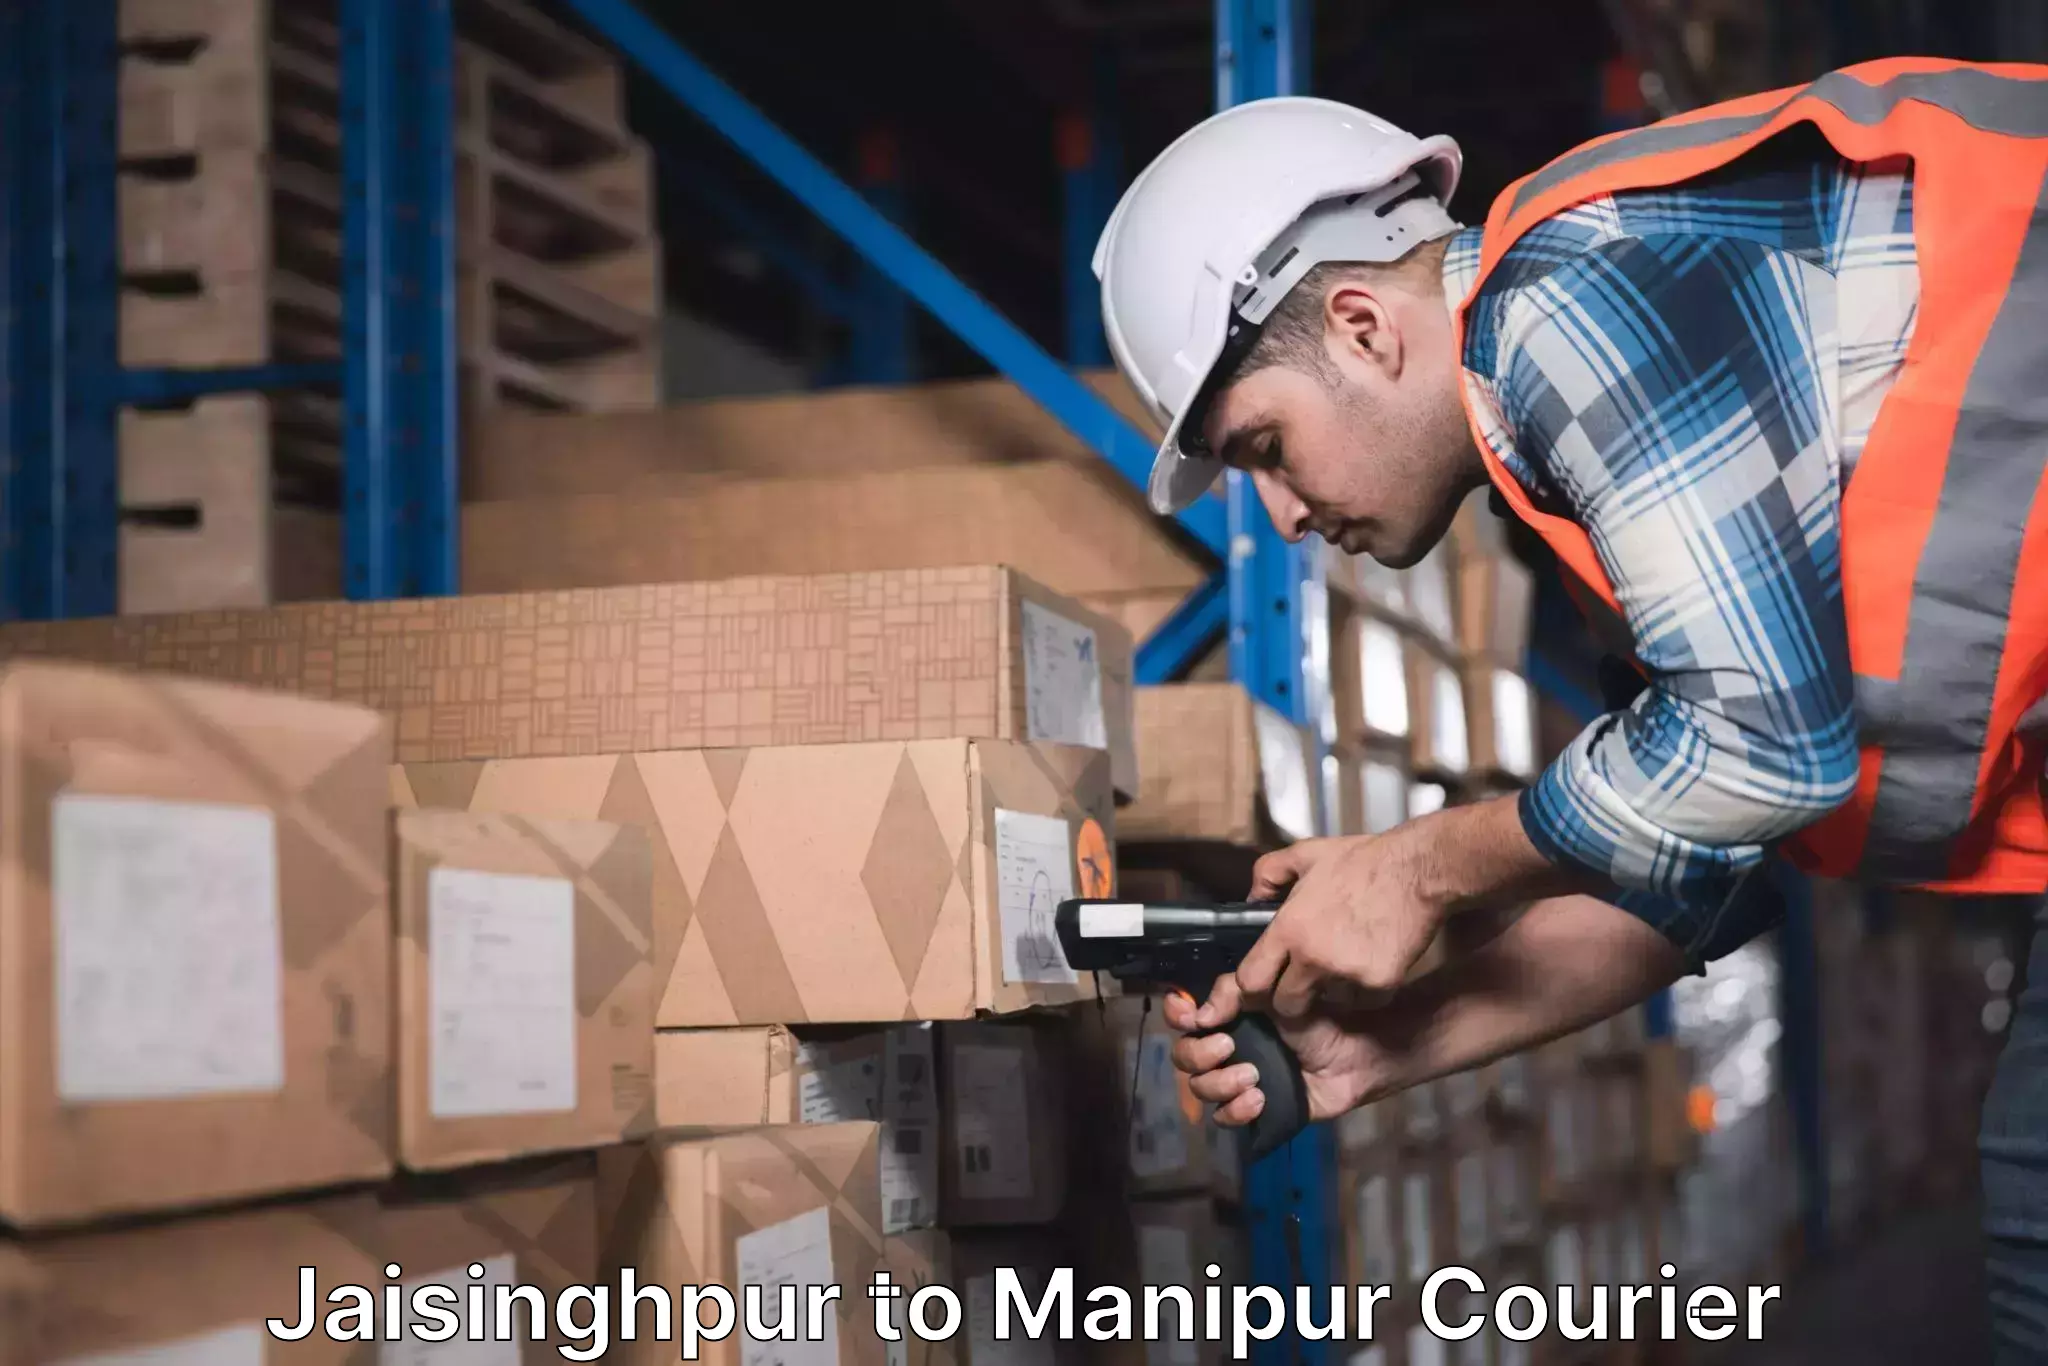 Sustainable shipping practices Jaisinghpur to Kaptipada